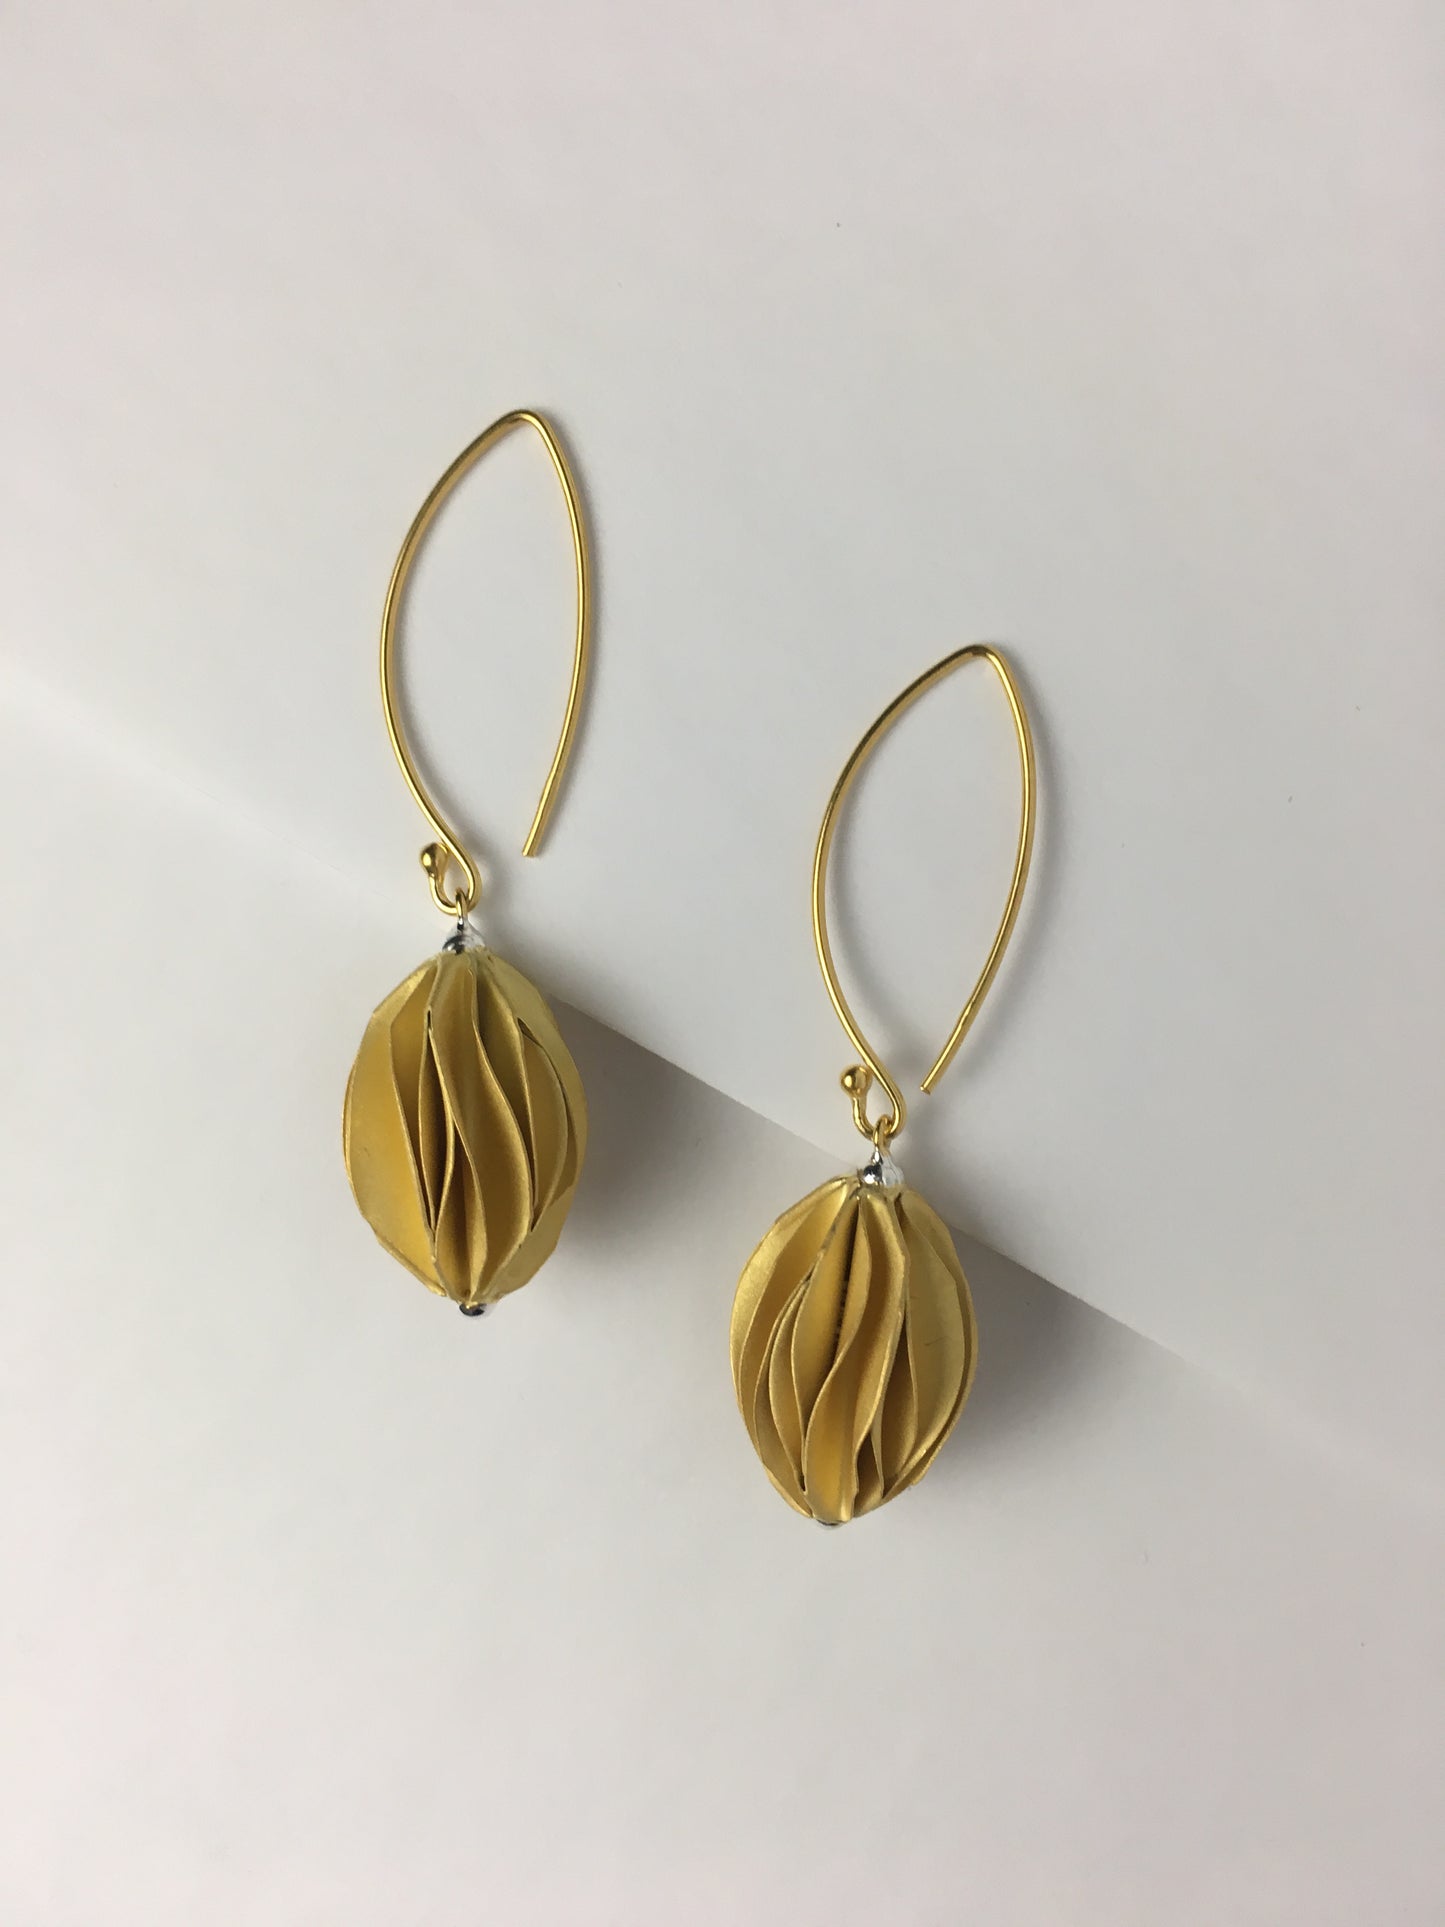 The Golden Ball Drop Earrings